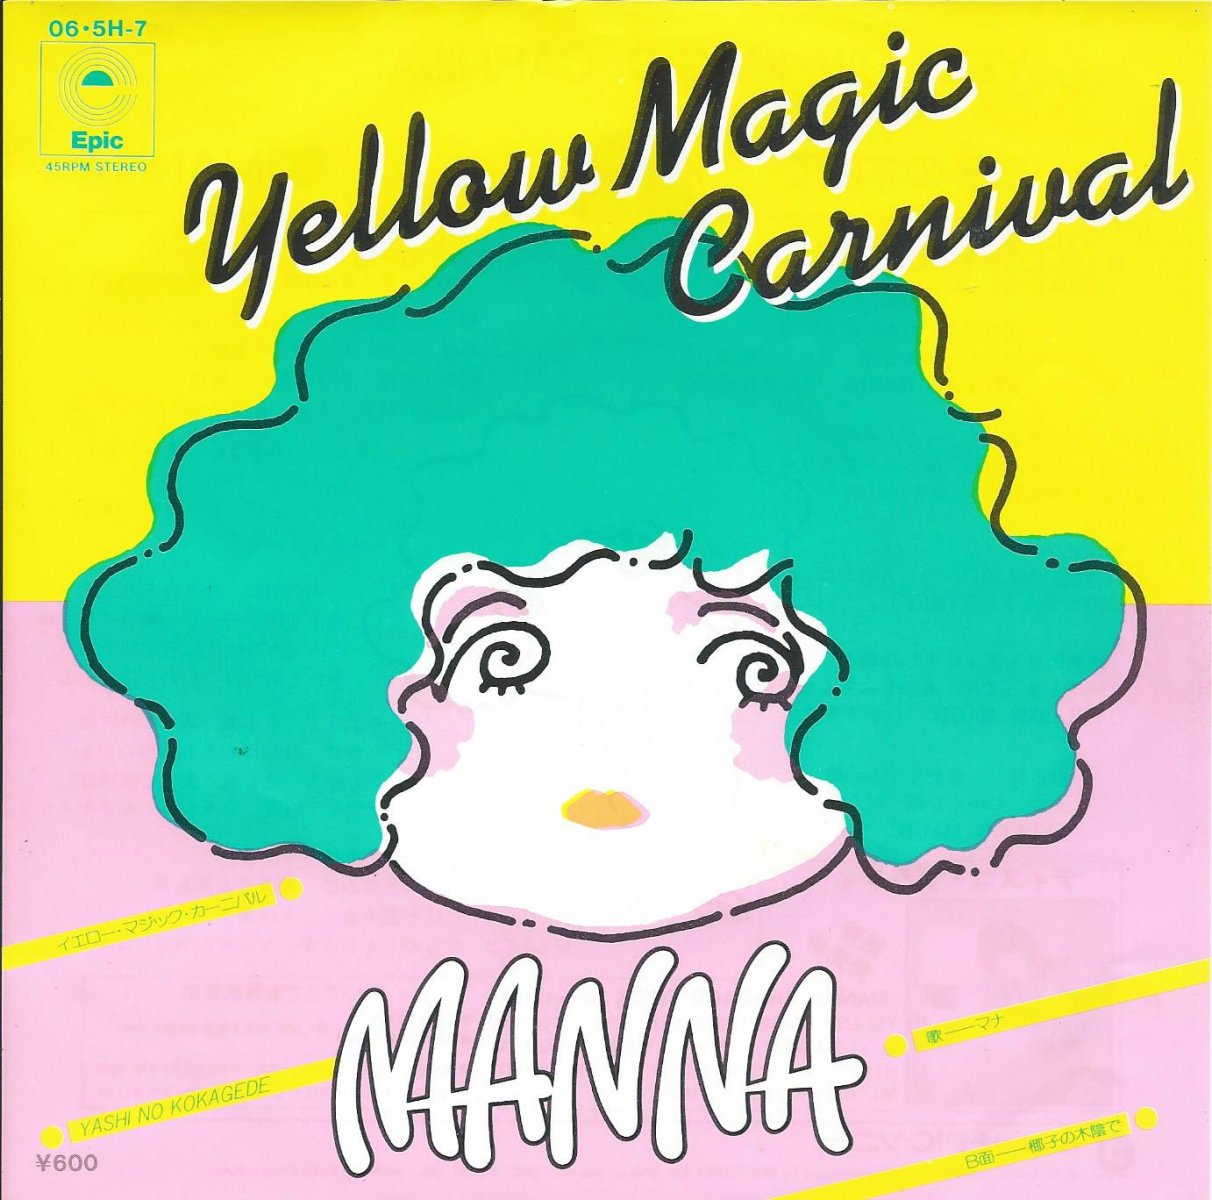 マナ MANNA / イエロー・マジック・カーニバル YELLOW MAGIC CARNIVAL (7